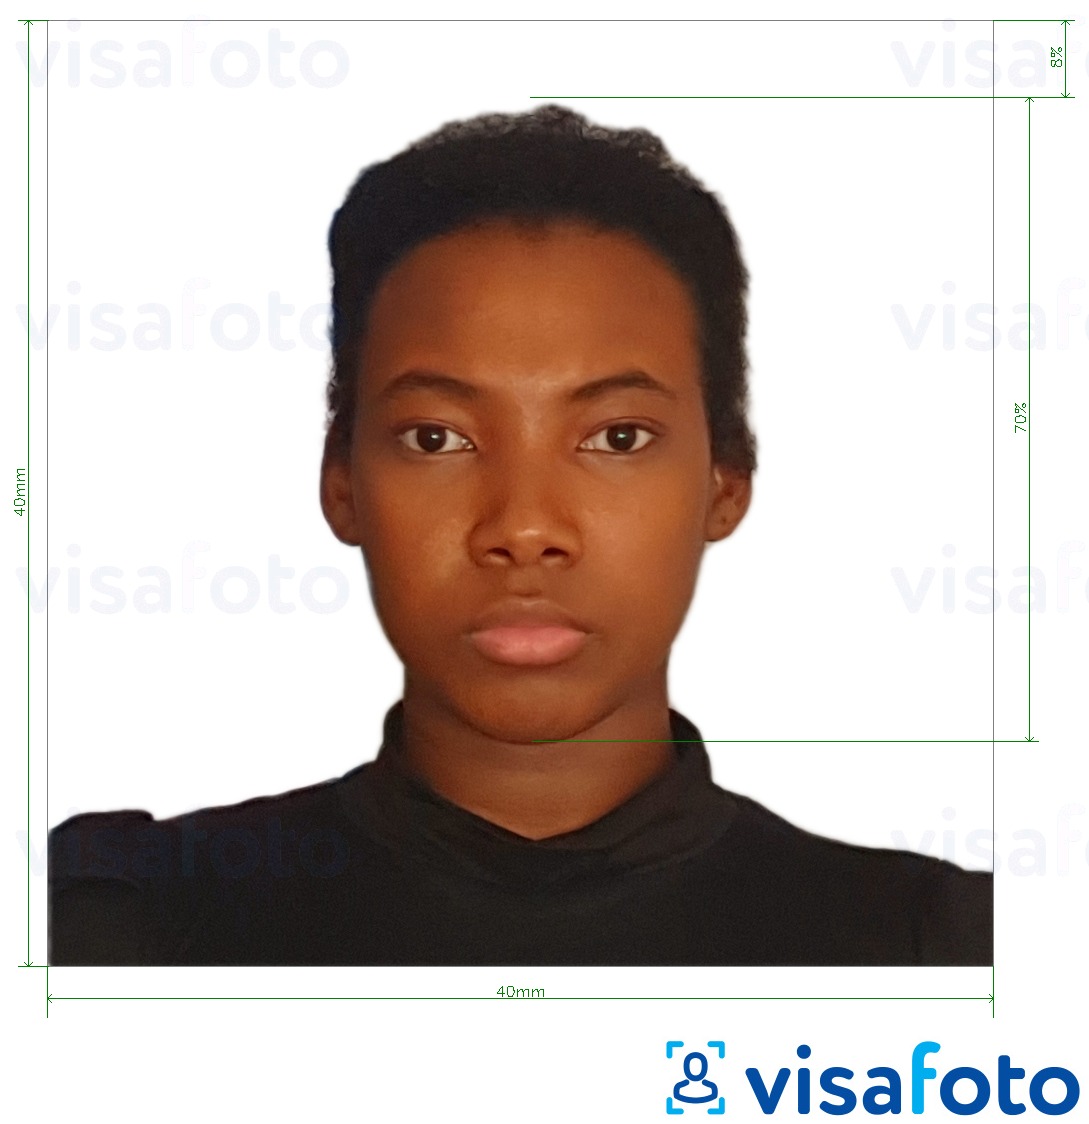 Contoh dari foto untuk Visa Madagaskar 40x40 mm dengan ukuran spesifikasi yang tepat